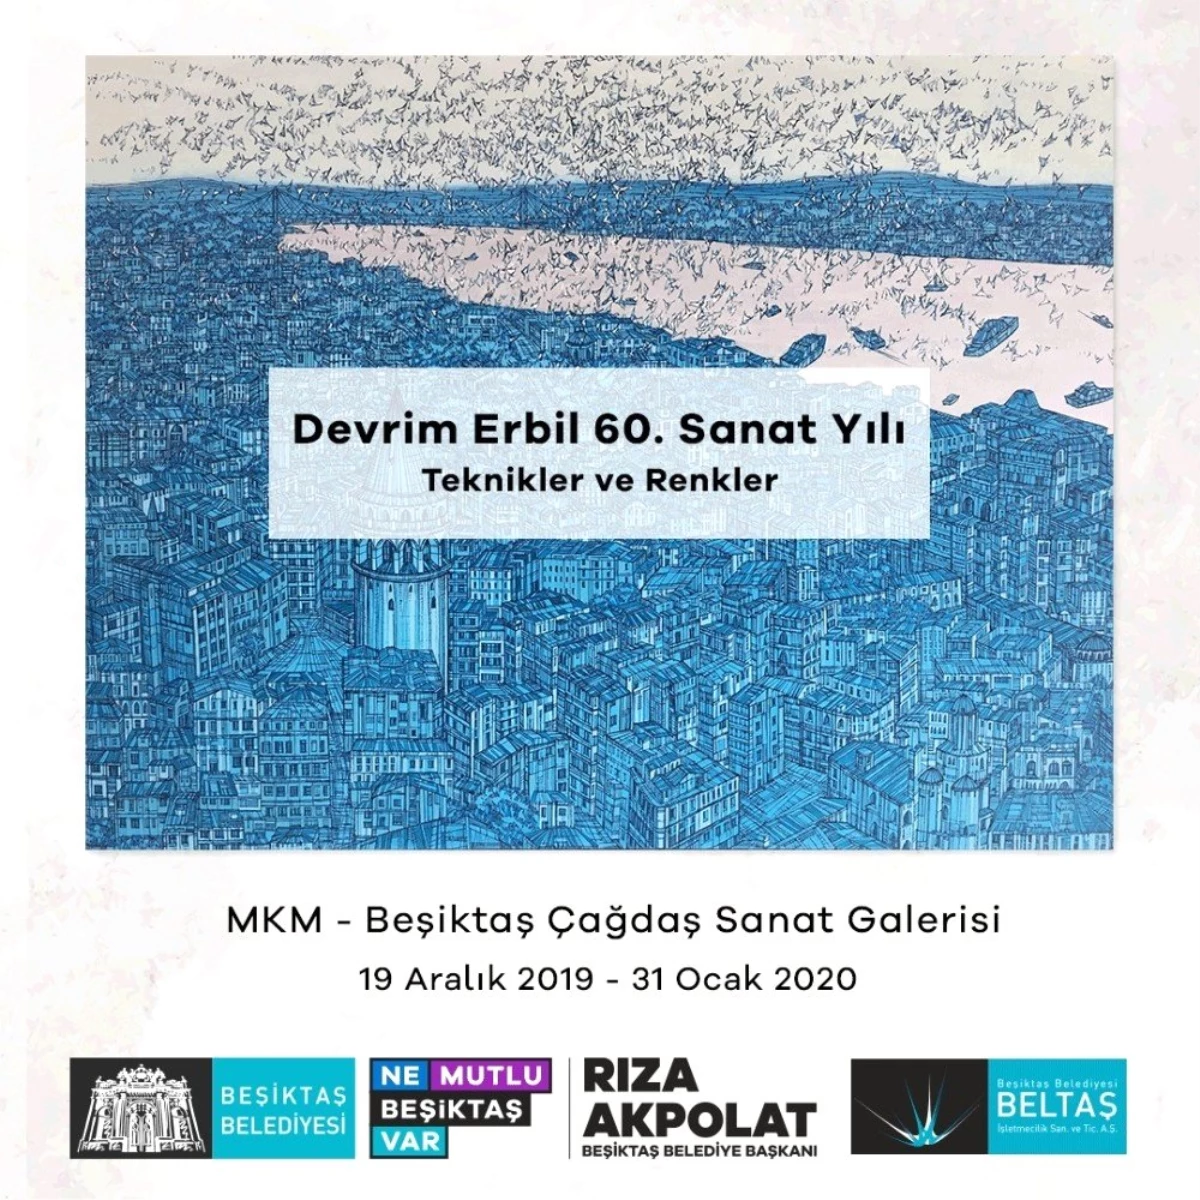 Devrim Erbil\'in 60. yıl sanat sergisi Beşiktaş Çağdaş Sanat Galerisinde açılacak